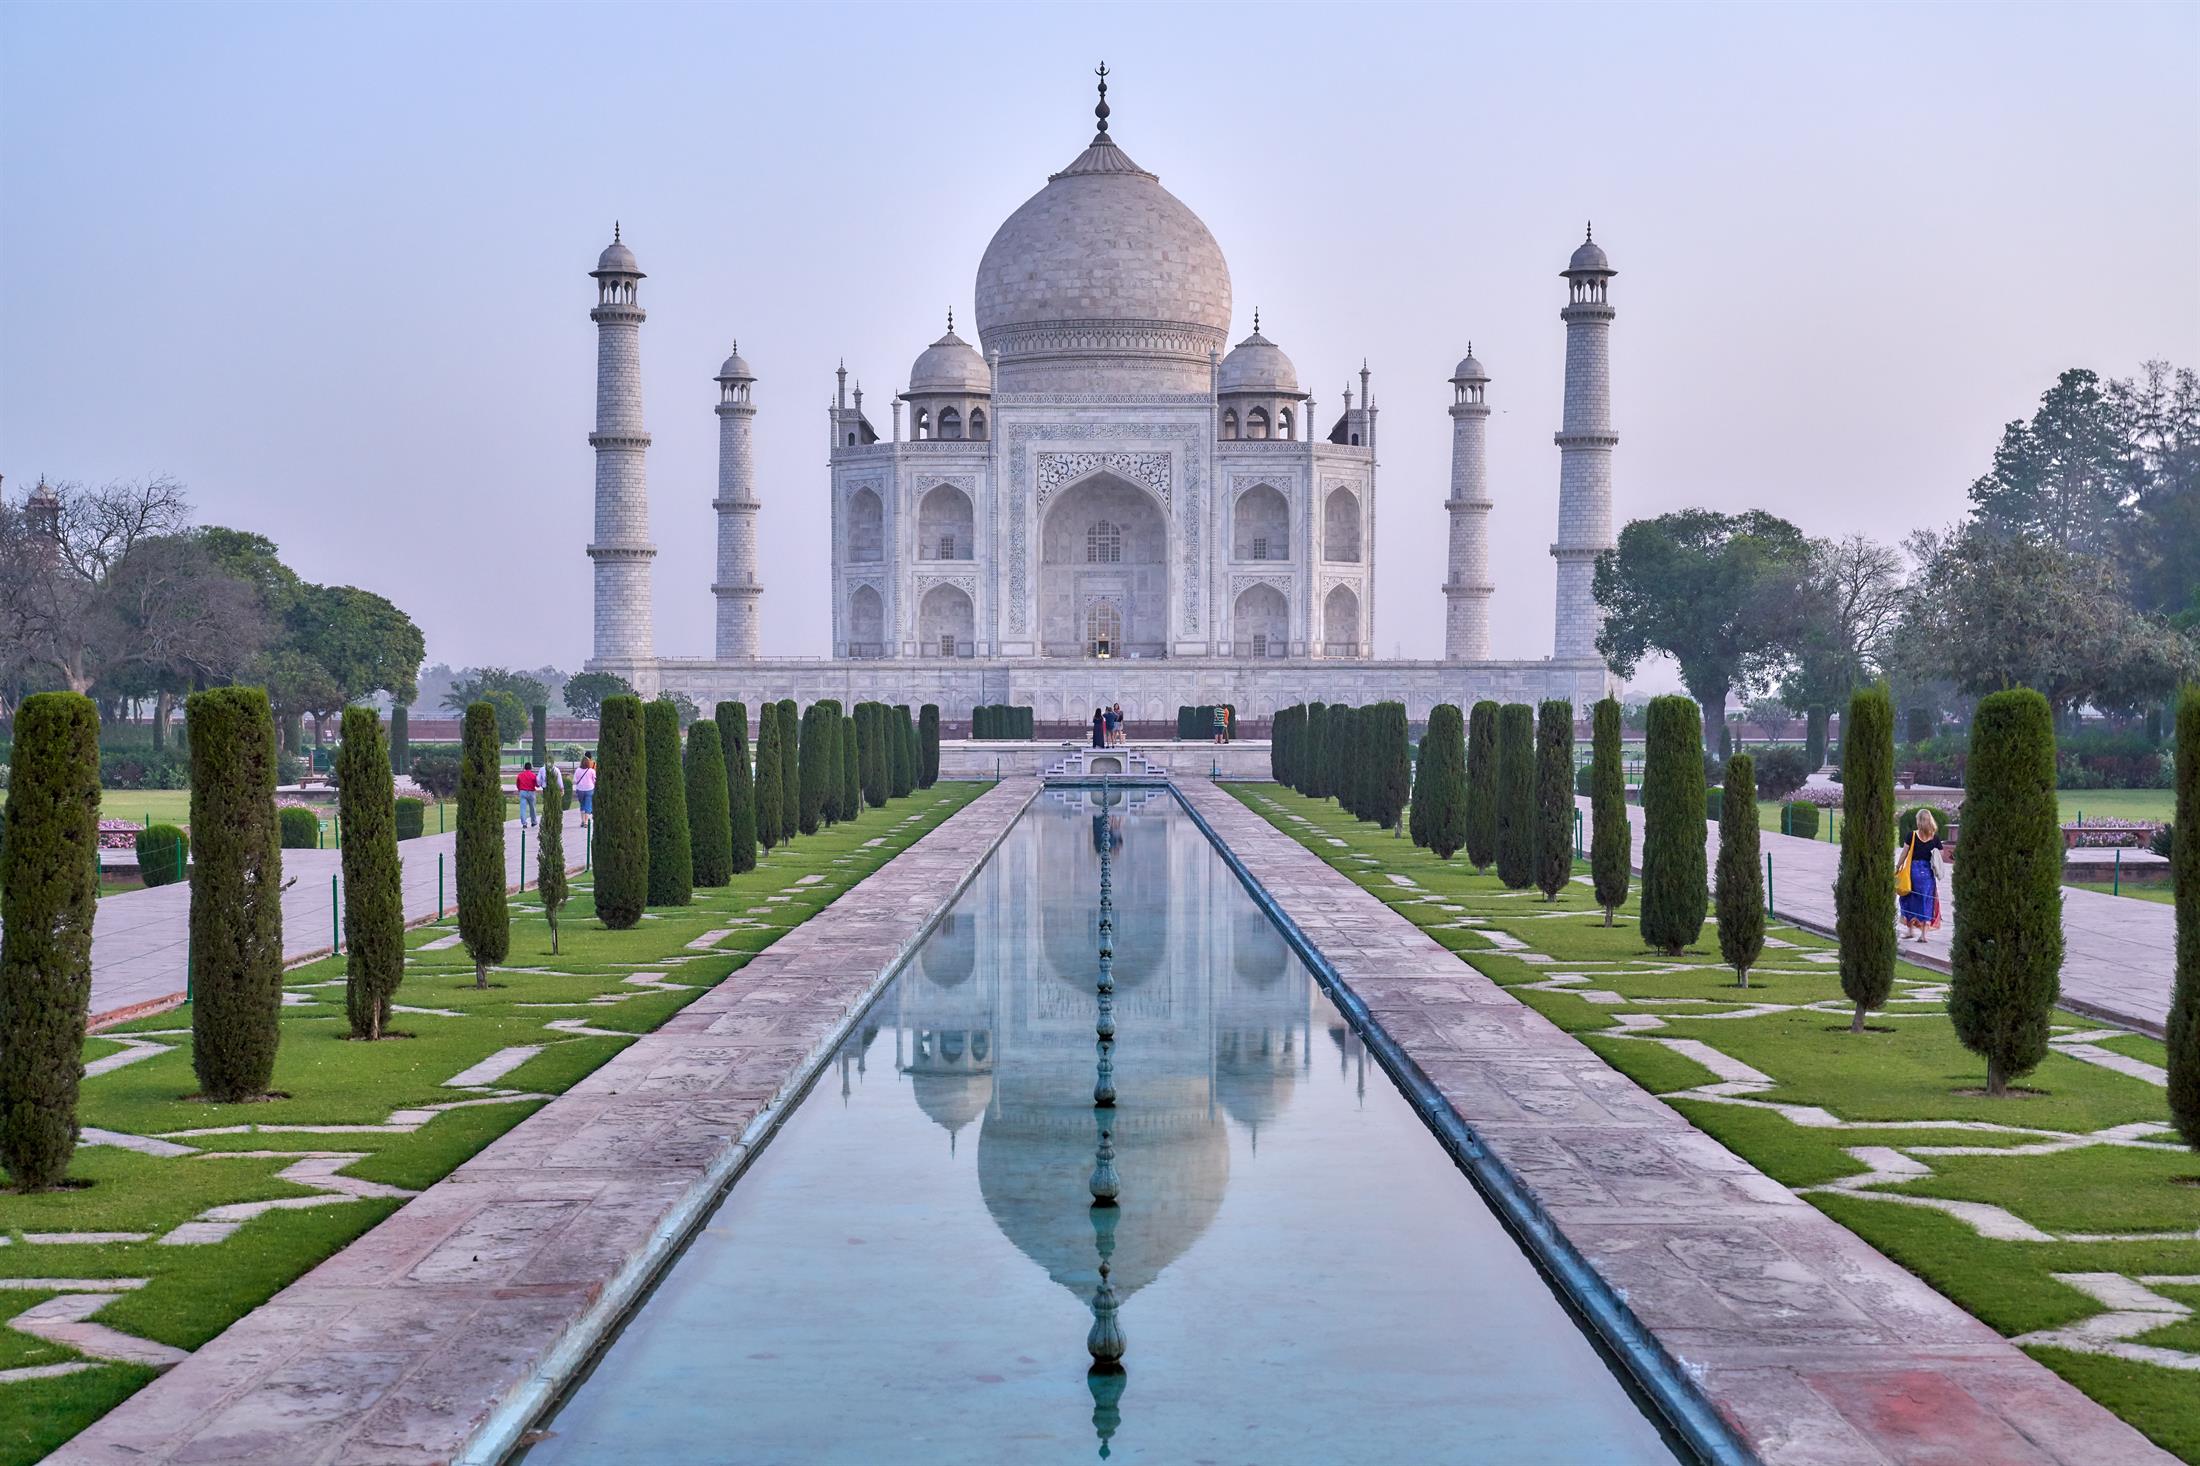 המלצה חוות דעת על דיסקברי טיול עולמי | חוות דעת על טיול להודו מרץ 16 עם המדריכה יעל שרייבר